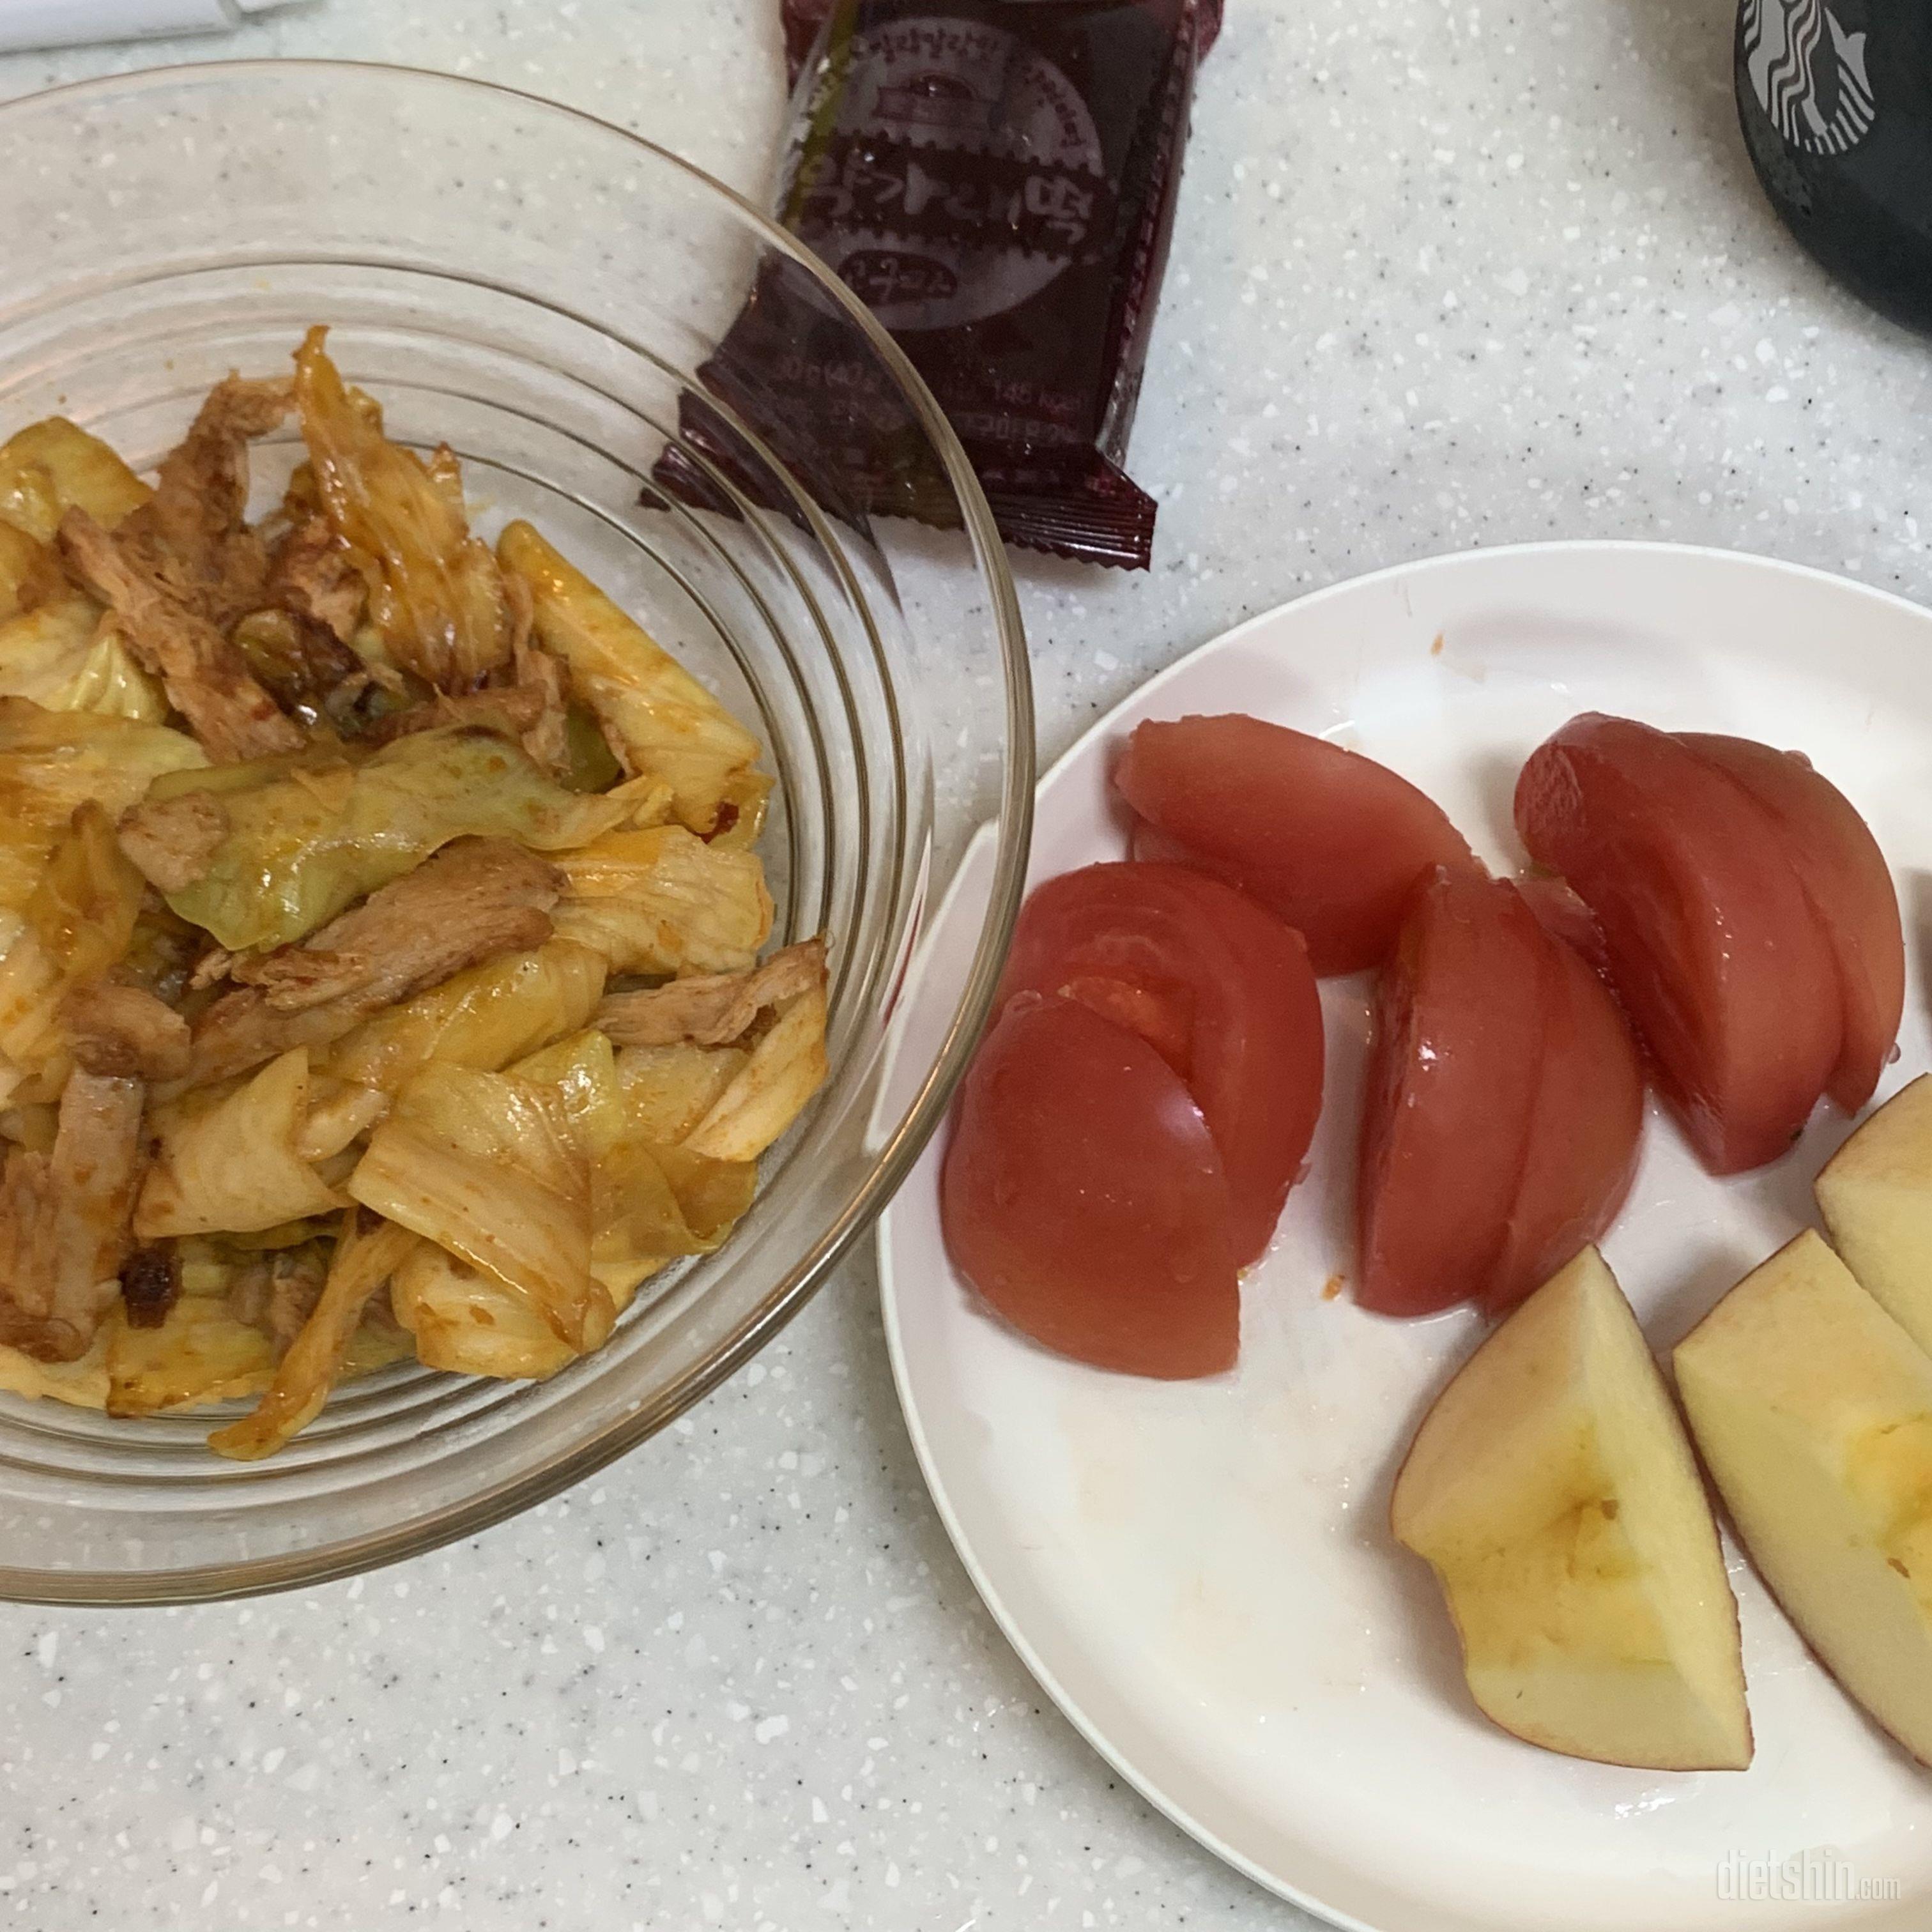 꿀설기랑 고구마 가래떡 다신샵 최애템